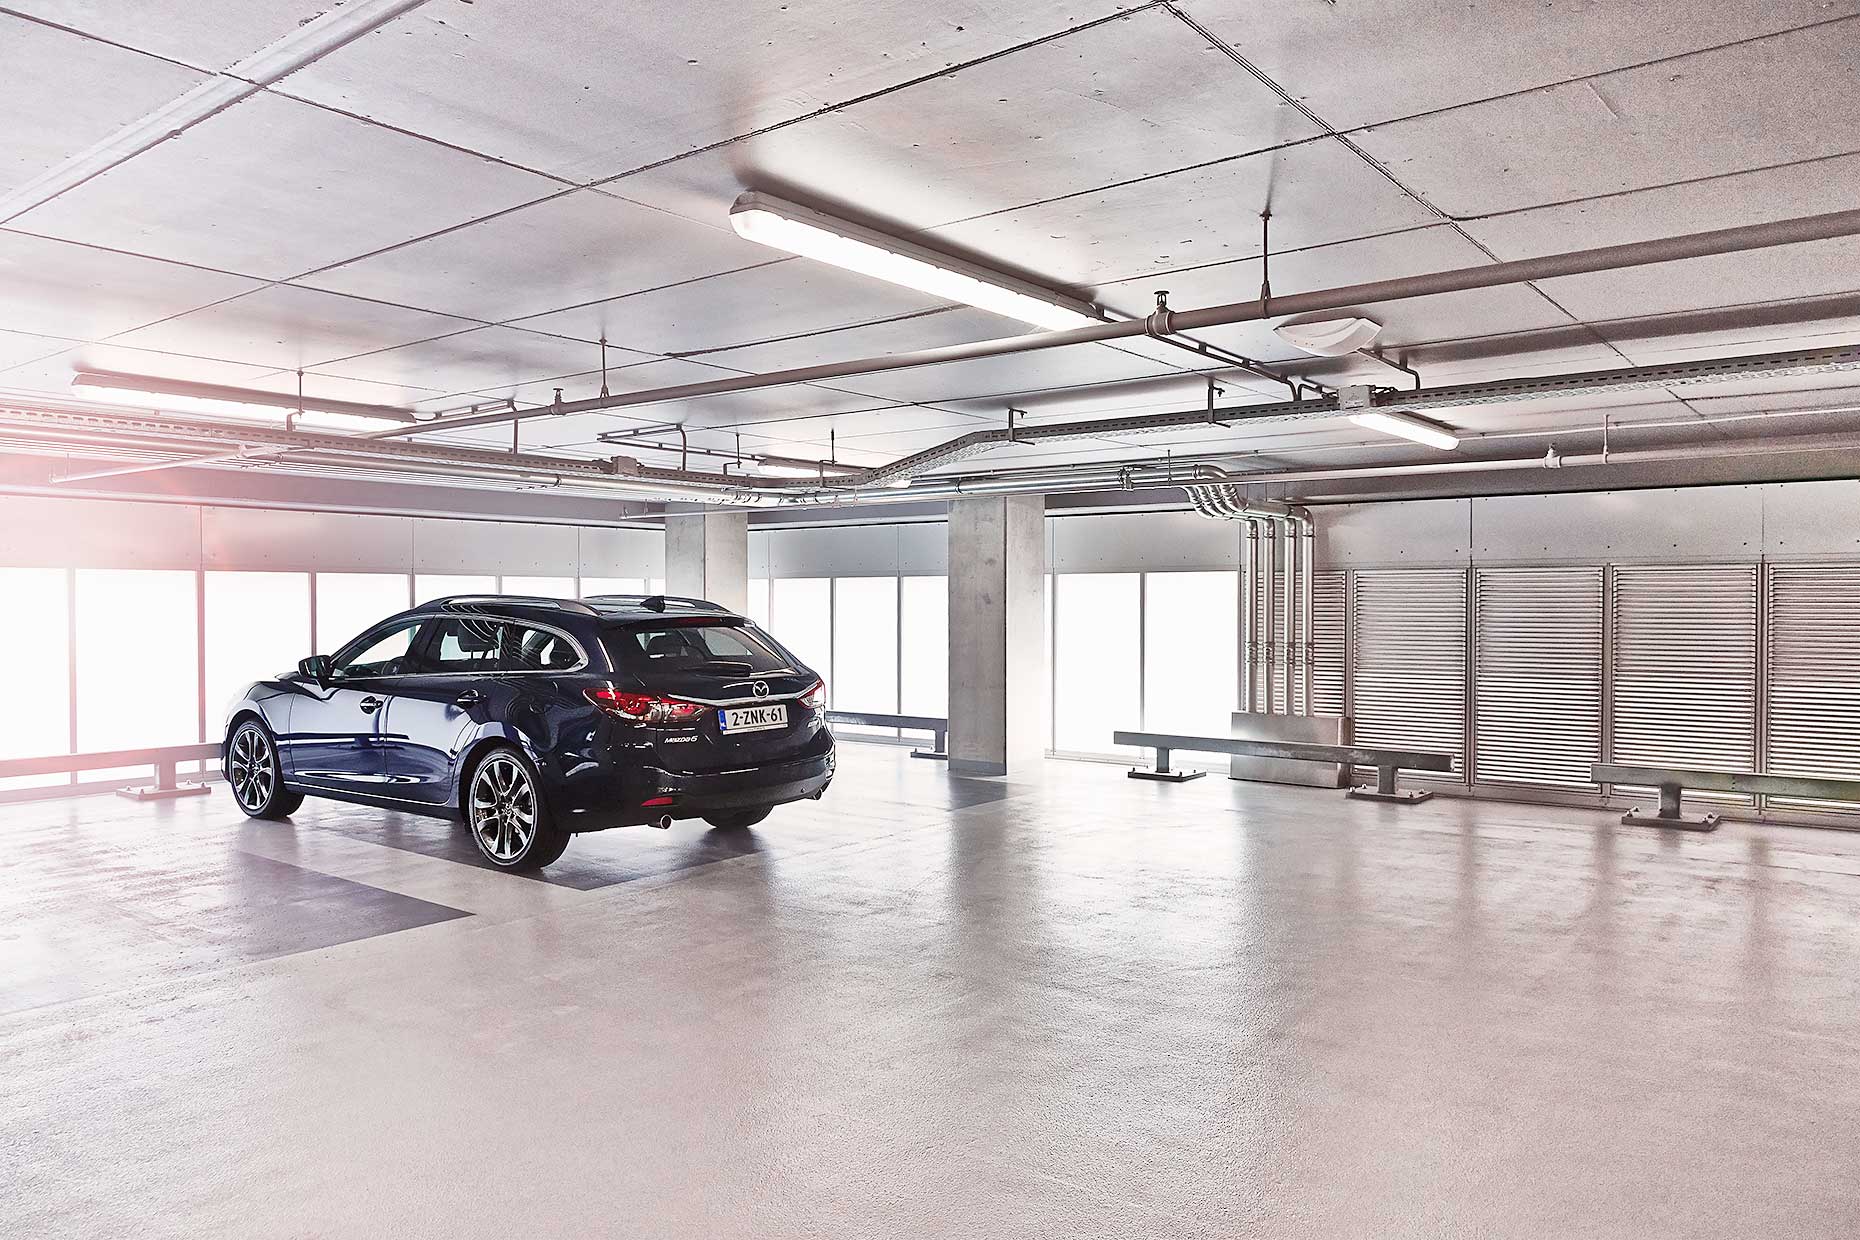 Mazda 6 in parking garage